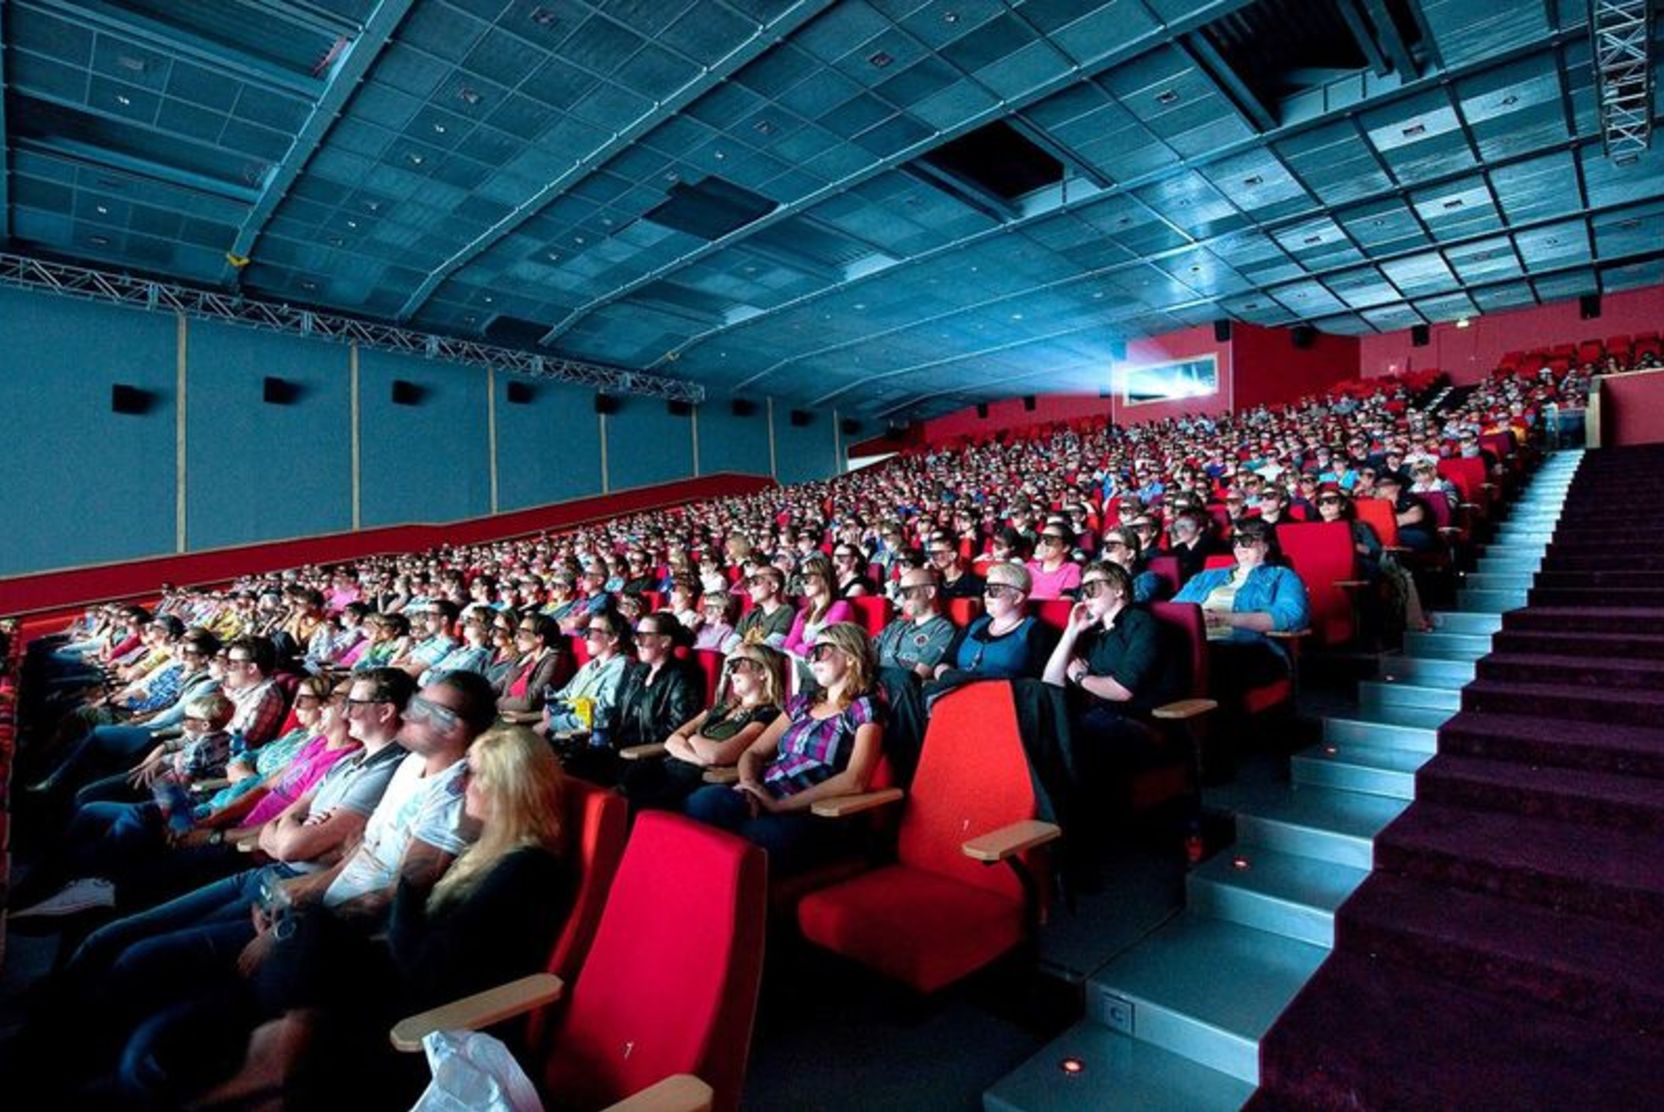 Кинотеатры Московской области заработают с 1 августа